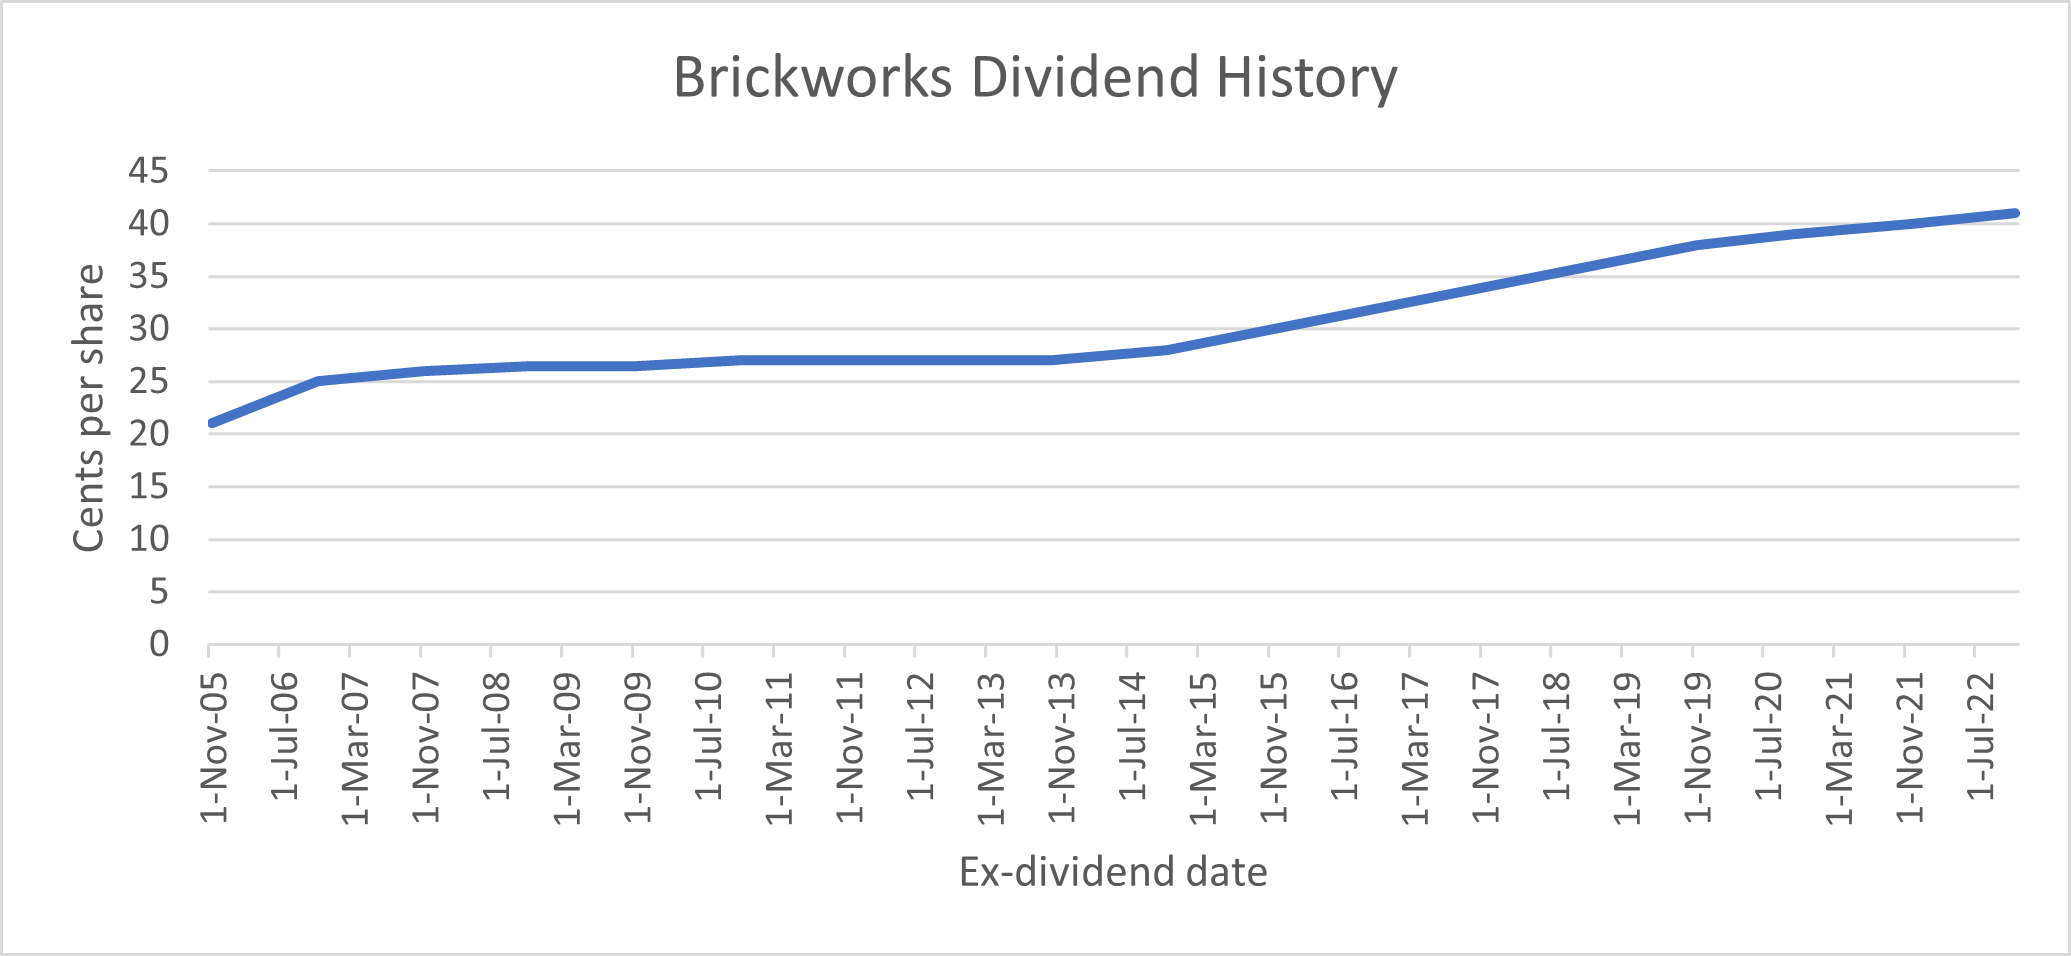 Brickworks Dividend History graph